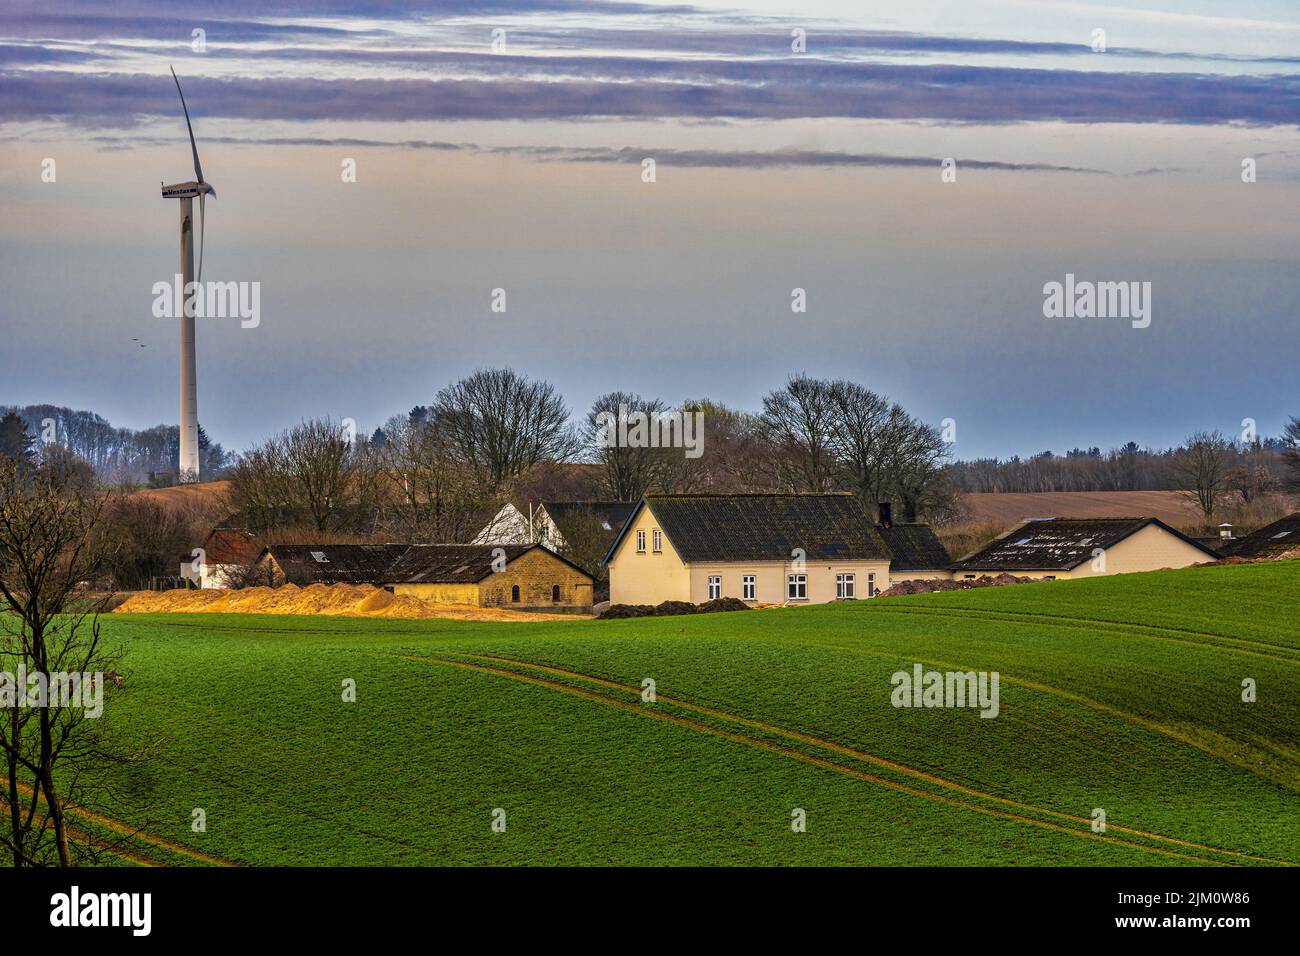 Paisaje agrícola con campos de cultivo, un grupo de granjas y un aerogenerador. Assens, Isla Fyn, Dinamarca, Europa Foto de stock